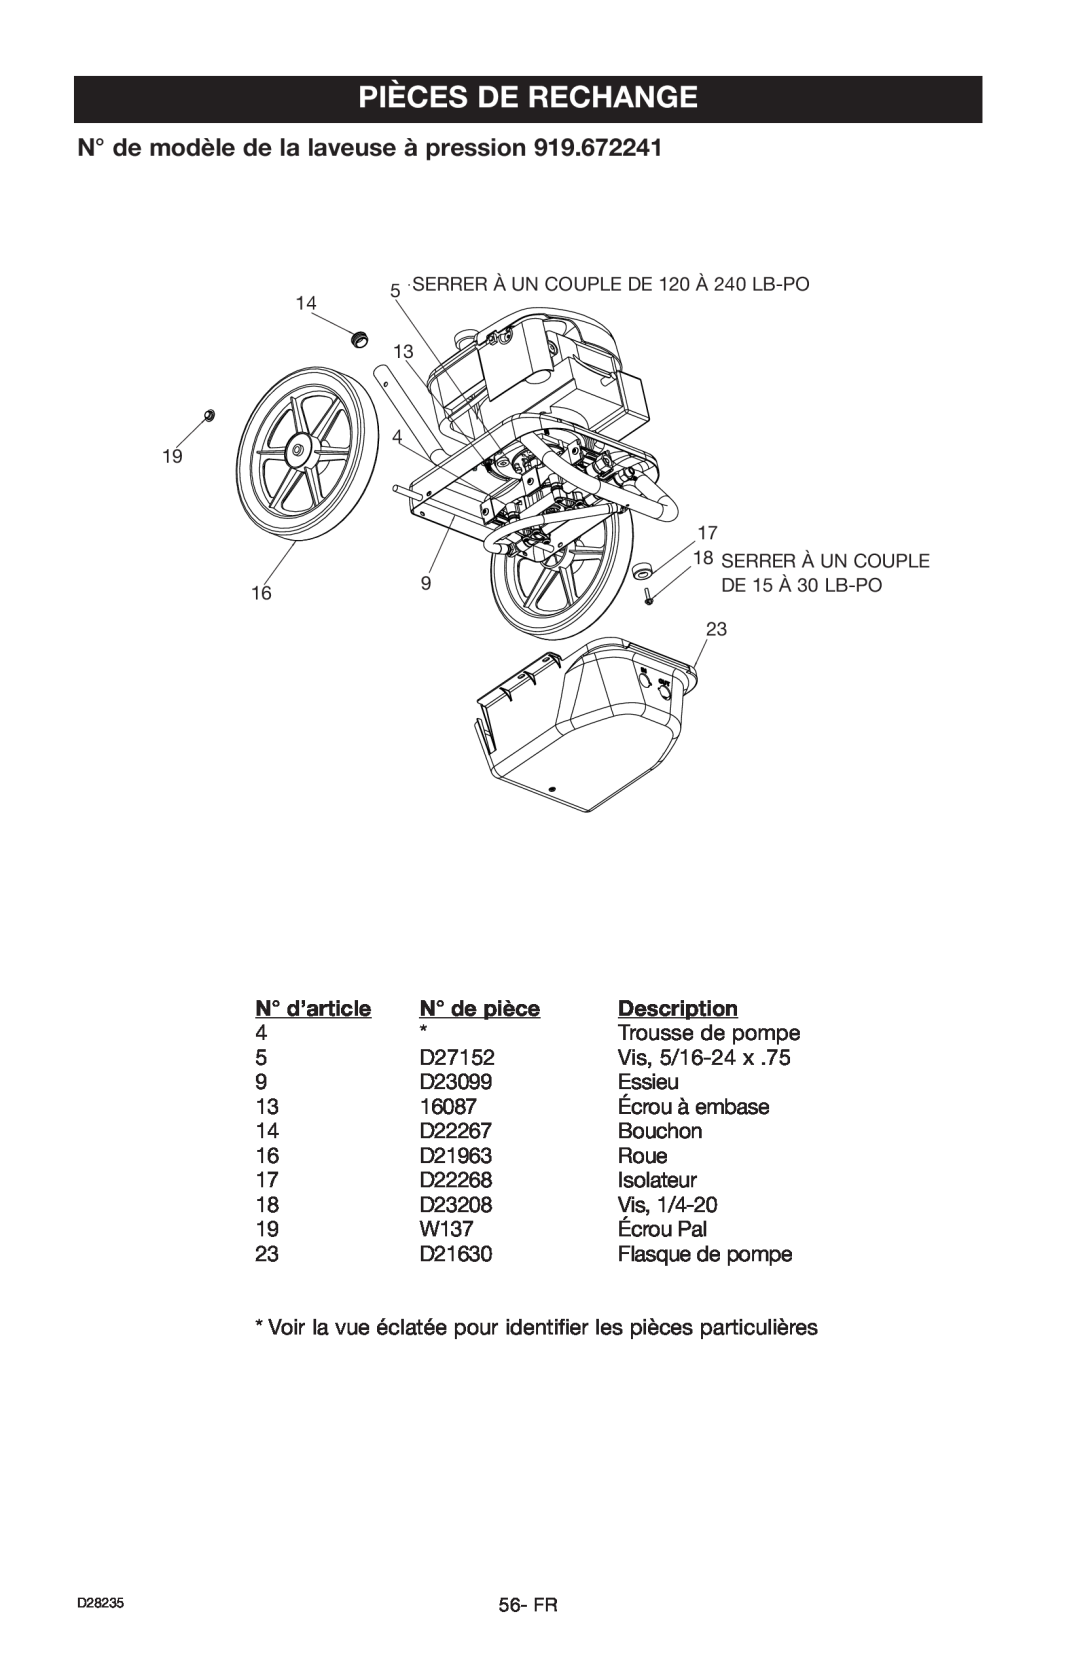 Craftsman D28235 Pièces De Rechange, N de modèle de la laveuse à pression, N d’article, N de pièce, Description 